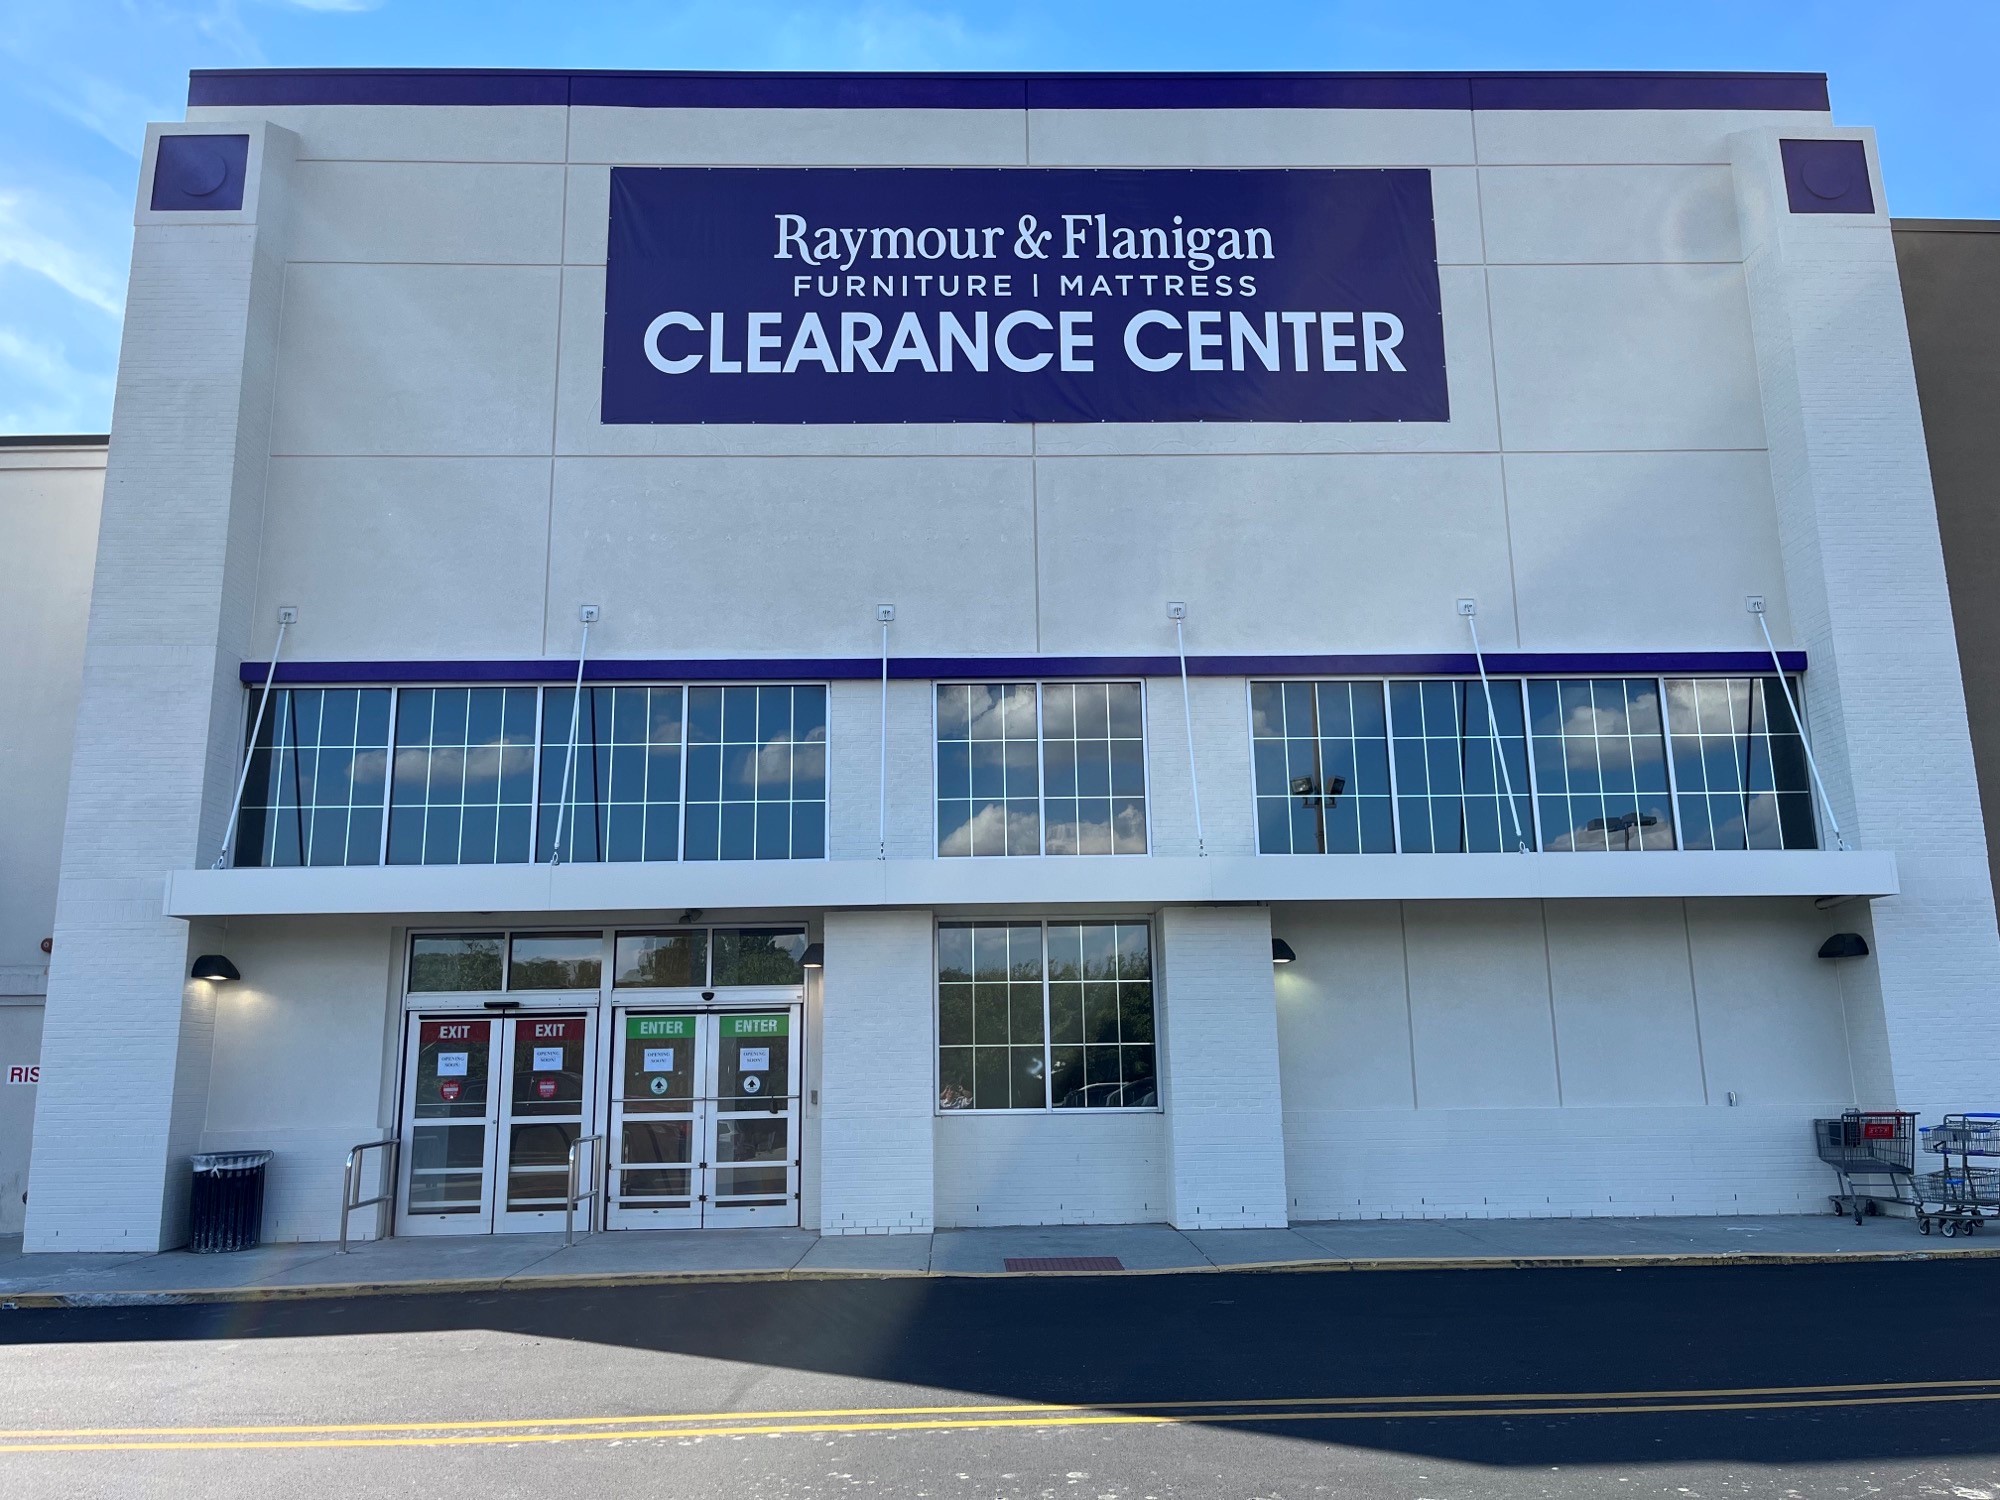 Furniture & Mattress Clearance Center